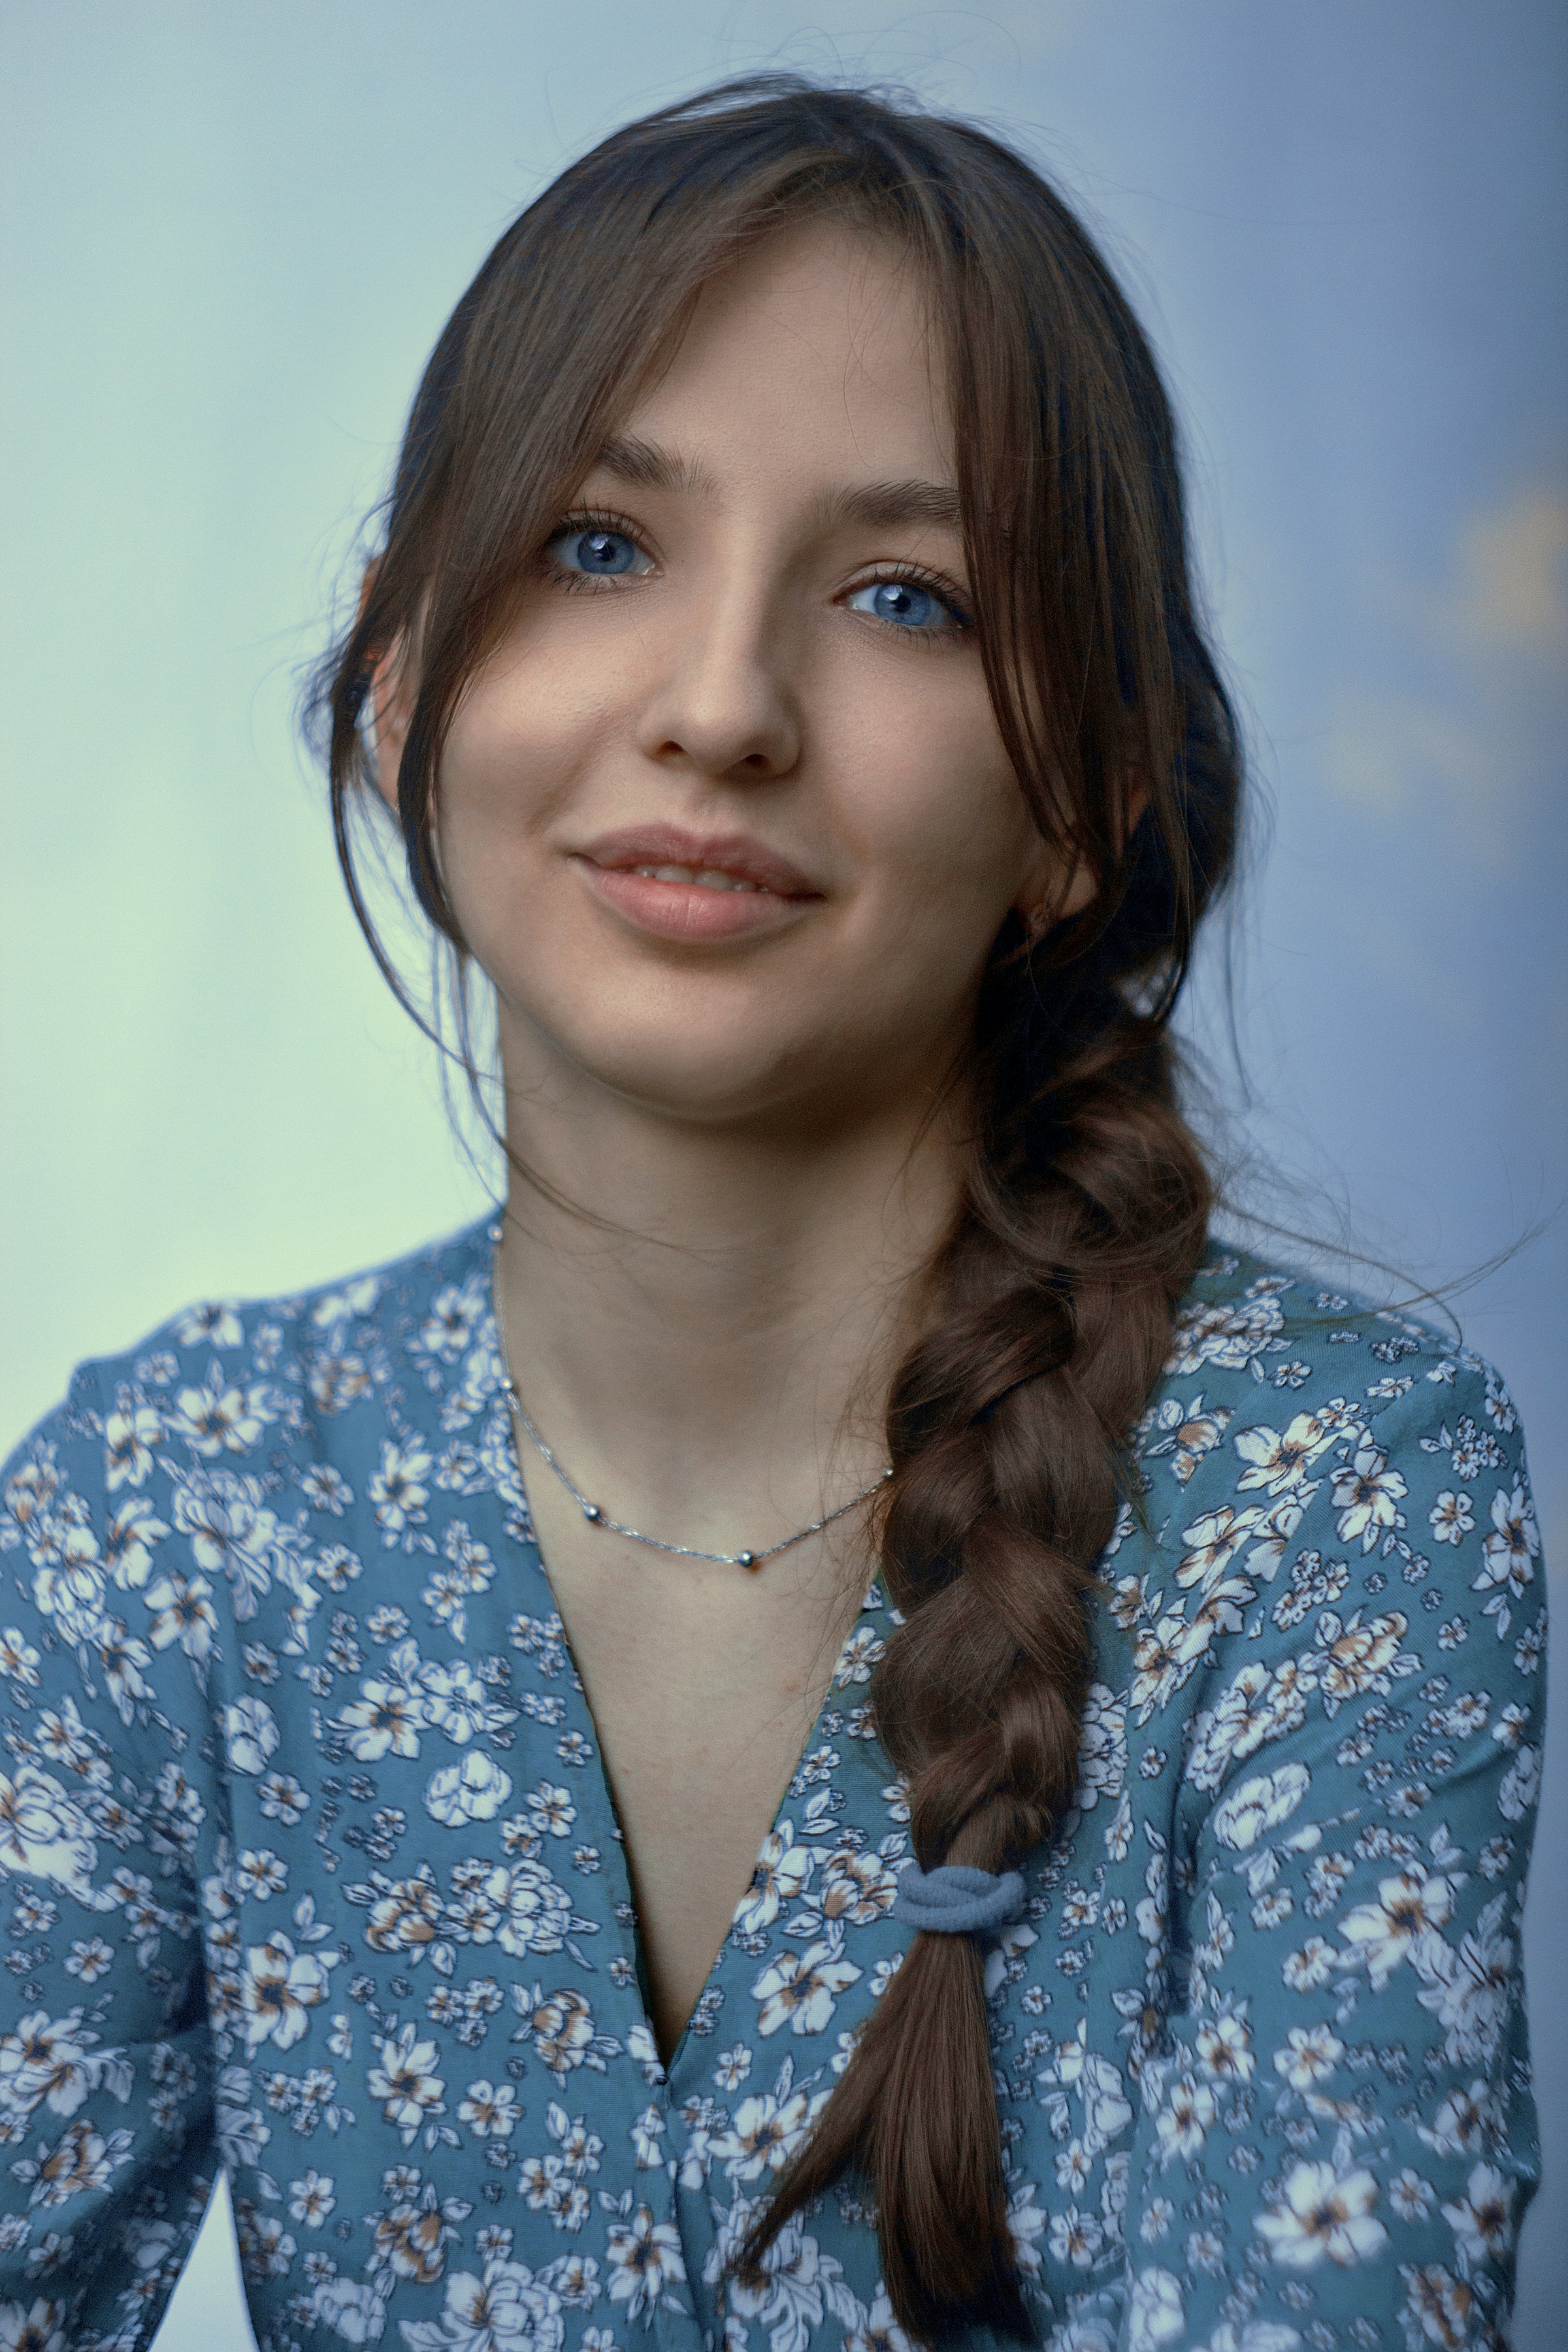 Une jeune femme vêtue d'une chemise boutonnée à fleurs bleues et blanches | Source : Unsplash